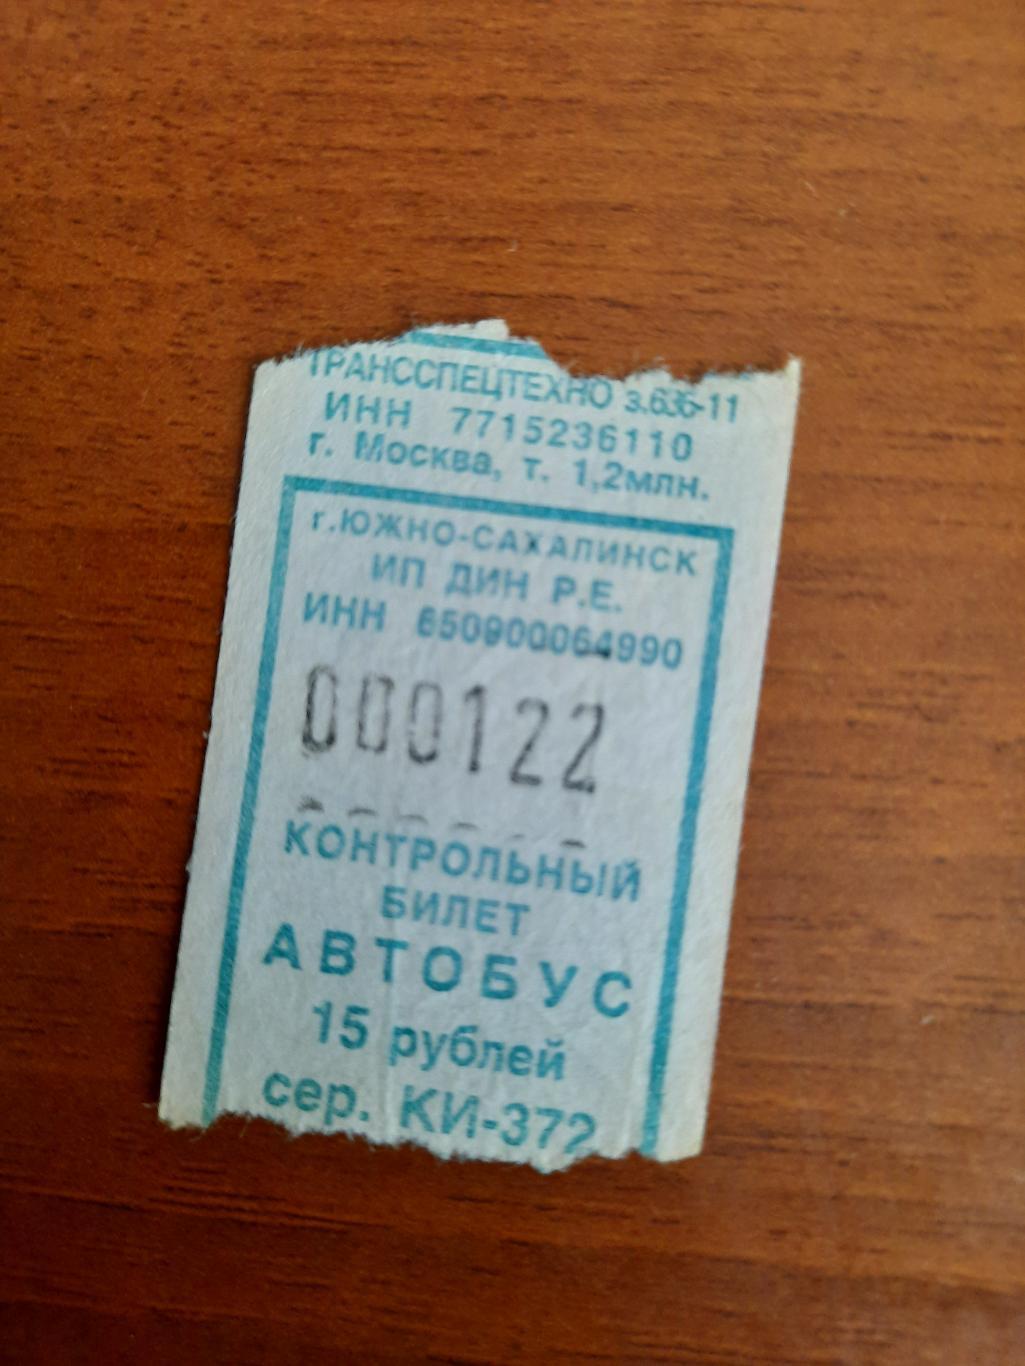 Автобусный билет с интересным номером 000122